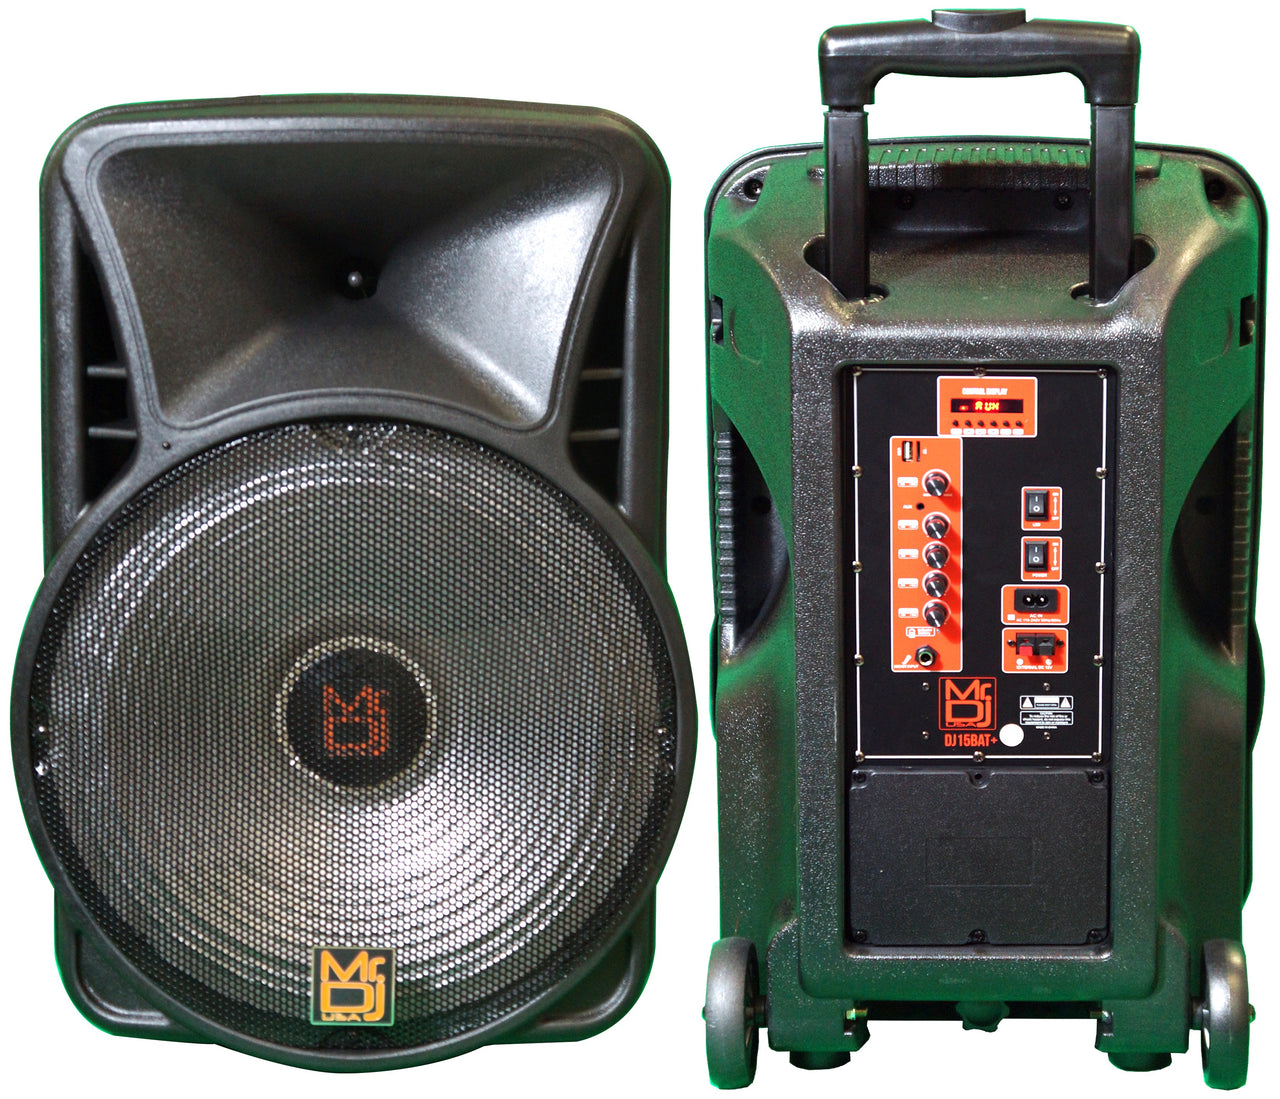 Mr. Dj DJ15BAT+ 15" Portable Trolley PA DJ Active Powered Bluetooth TWS Speaker 3500 Watts LCD/MP3/USB/micro SD